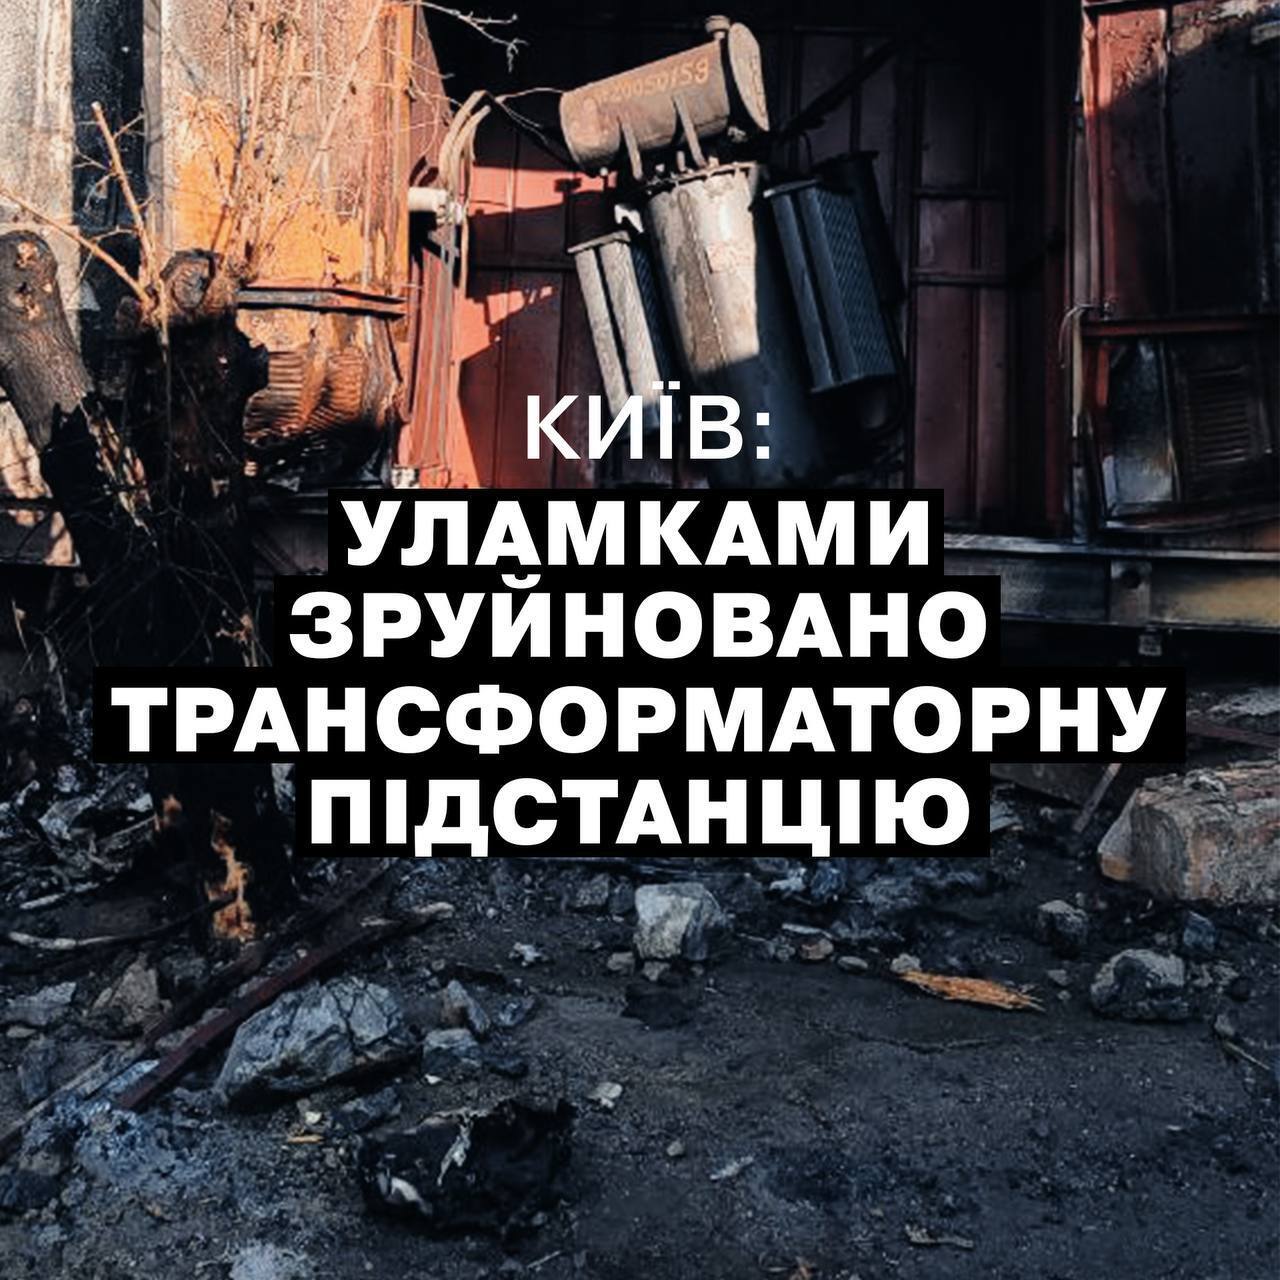 Россия атаковала Киев ракетами, работала ПВО: возник пожар, уничтожена трансформаторная подстанция. Фото